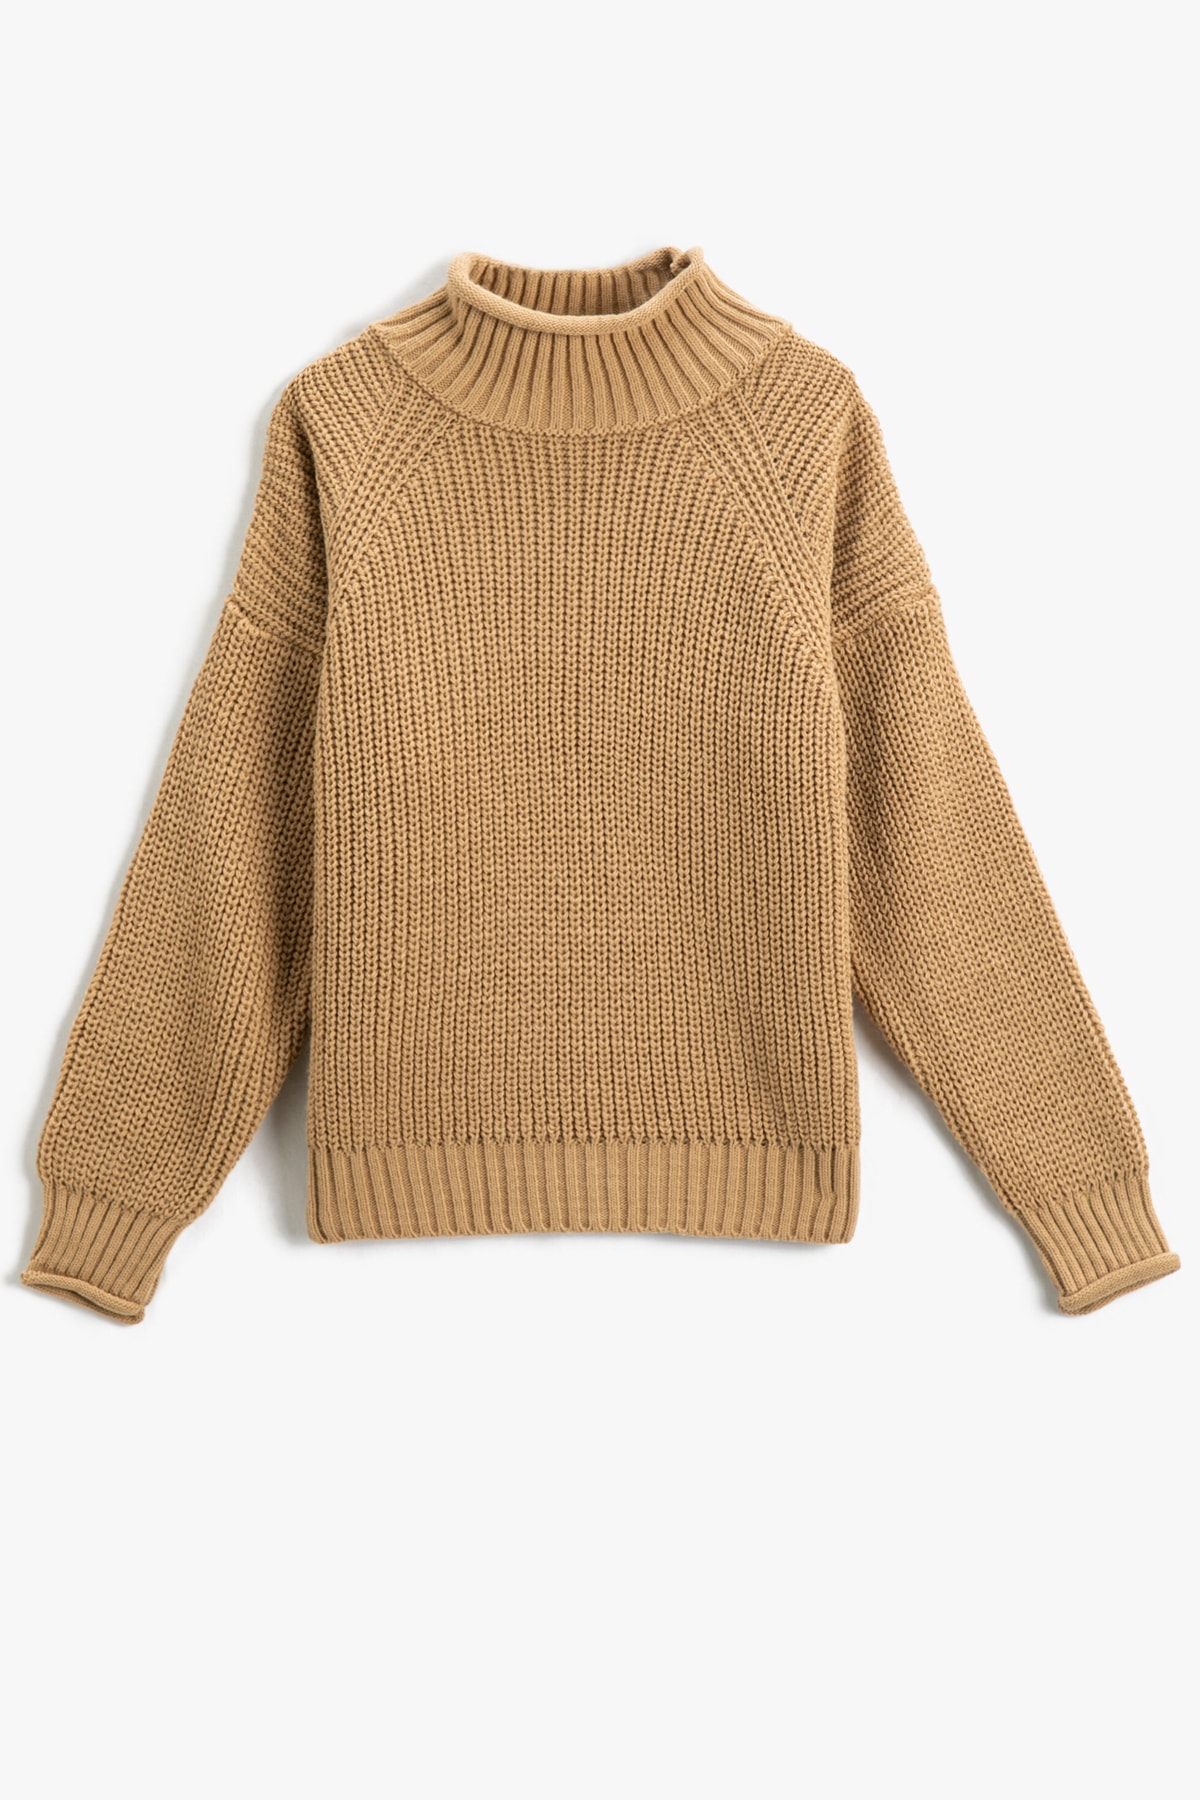 Koton Girls Brown Sweater